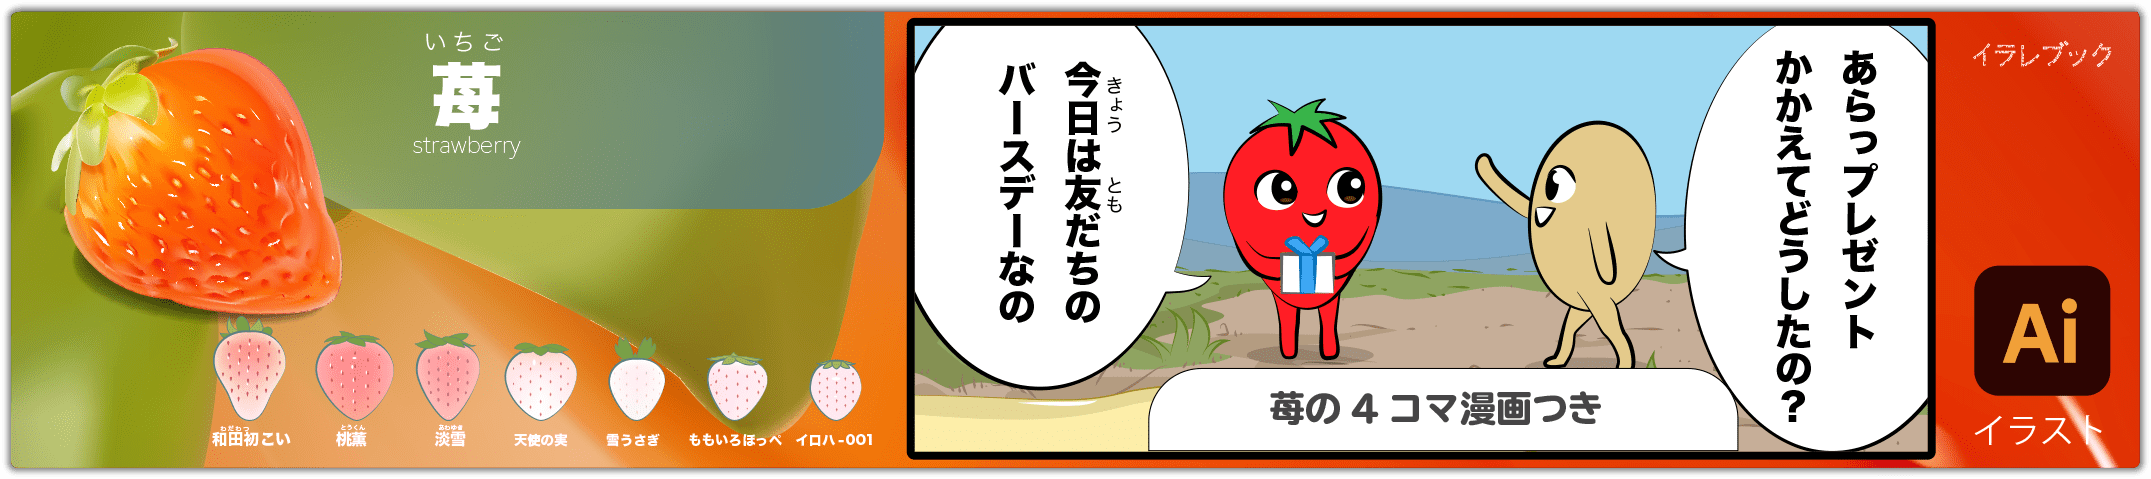 いちご strawberry